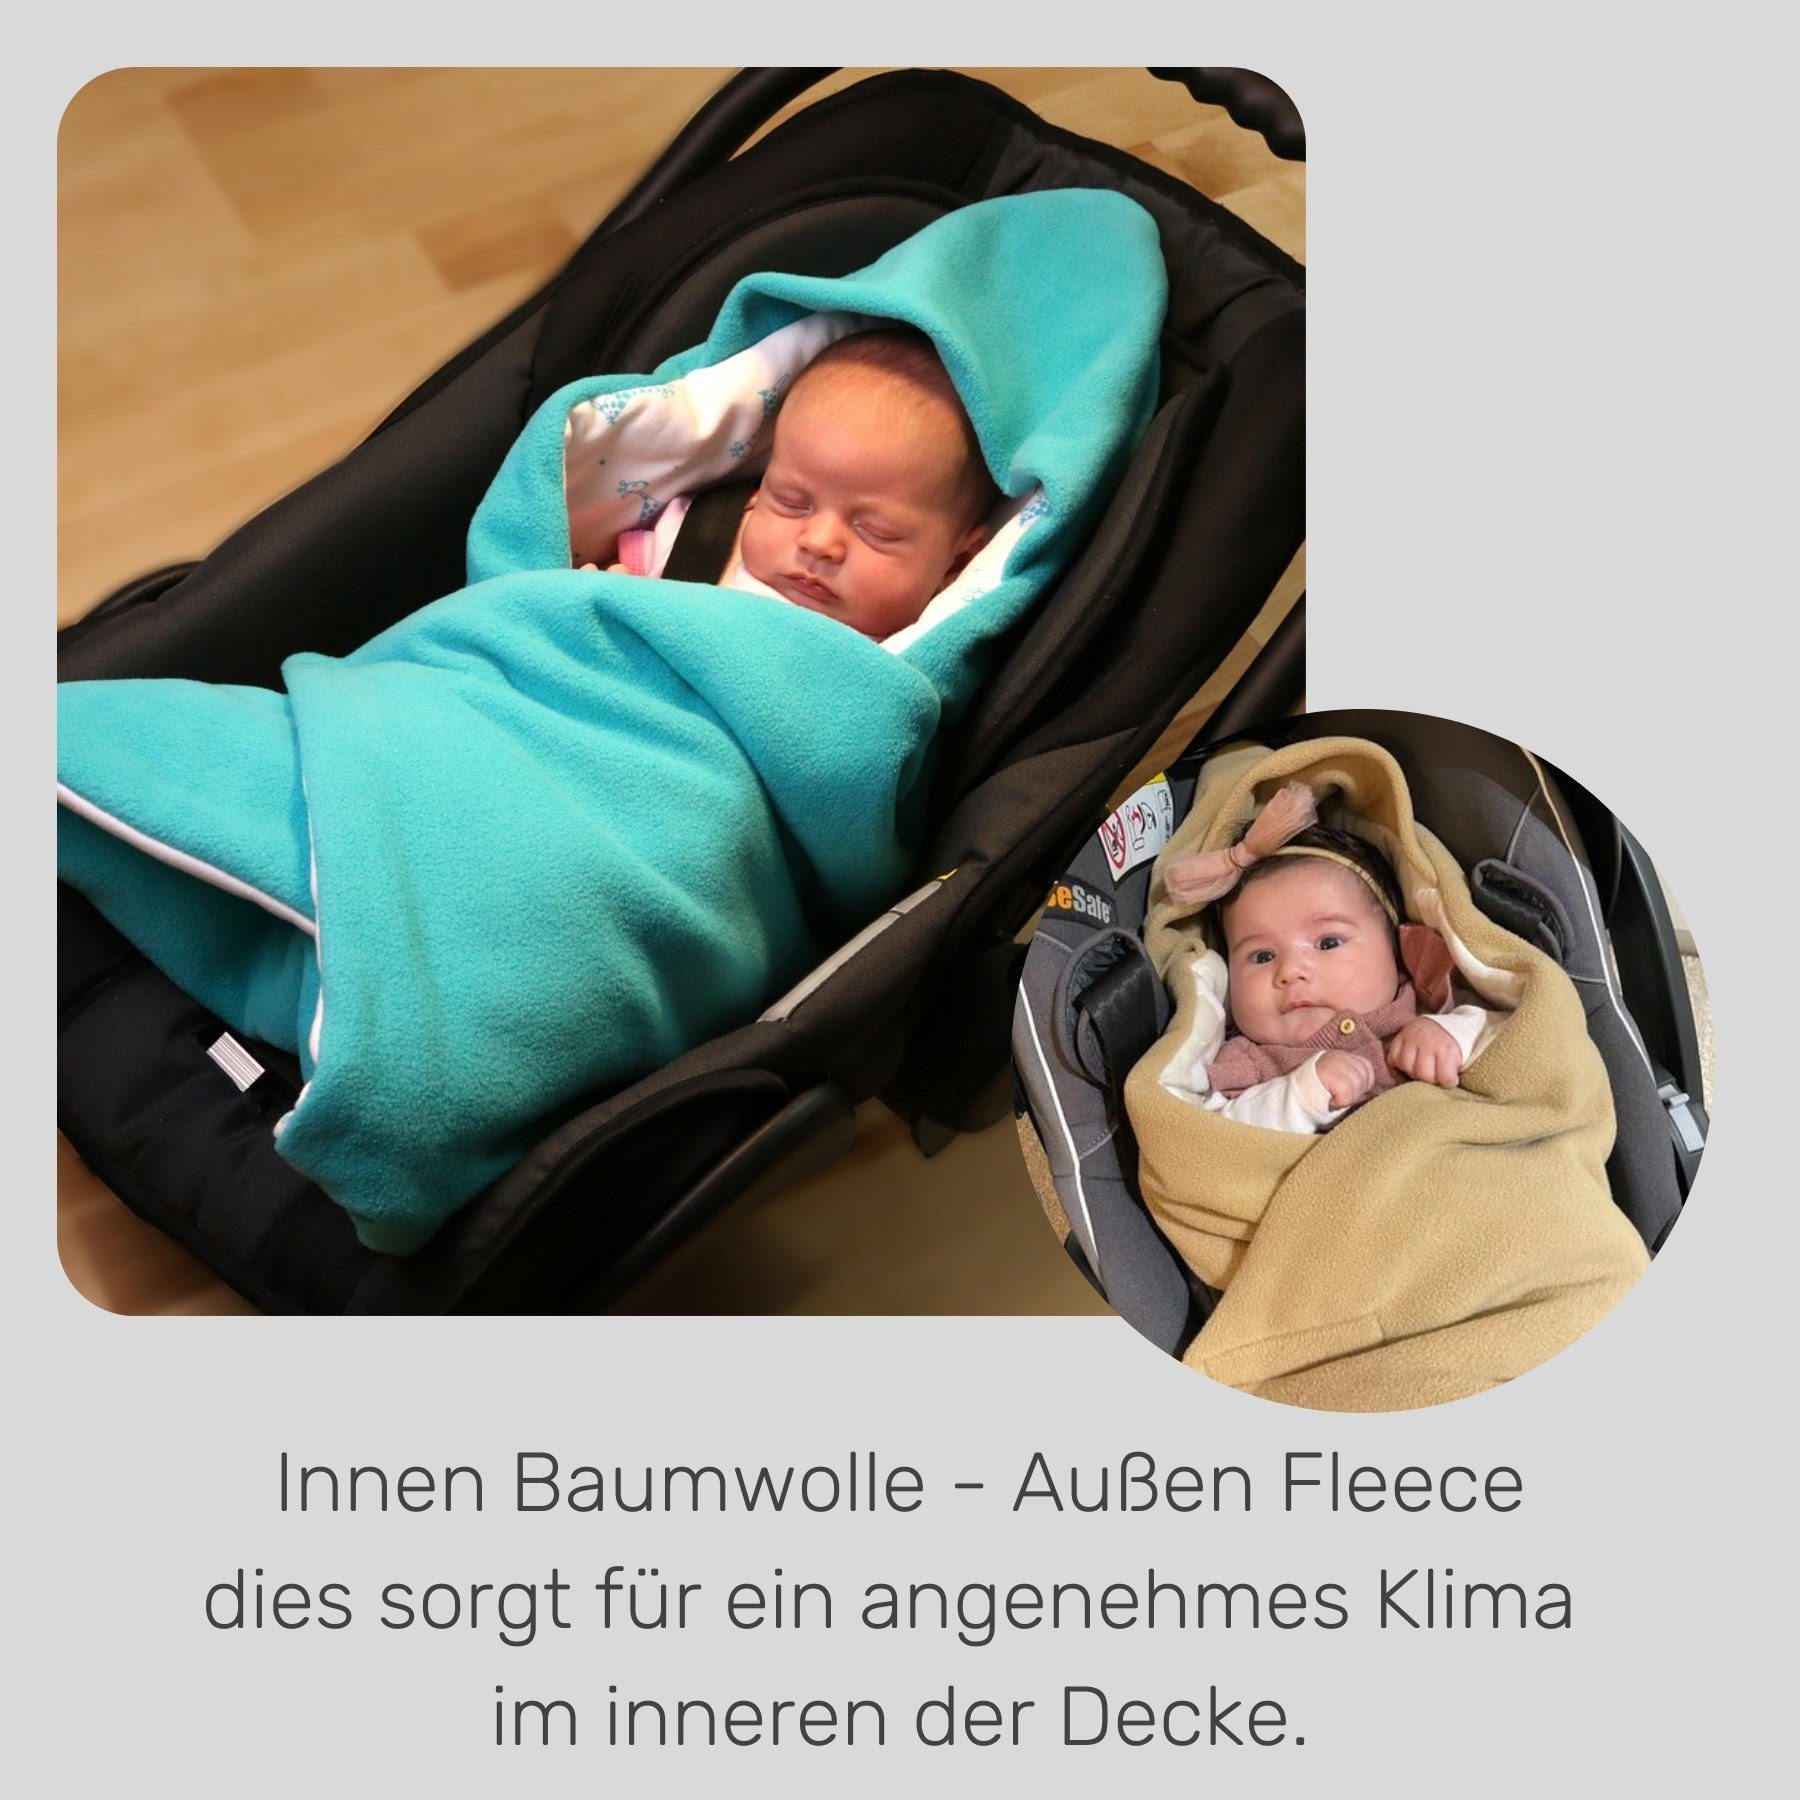 Einschlagdecke Fußsack für die Winter, Punkt 3 Babyschale HOBEA-Germany, geeignet für Babyschalenfußsack Babyschale flieder/Blätter